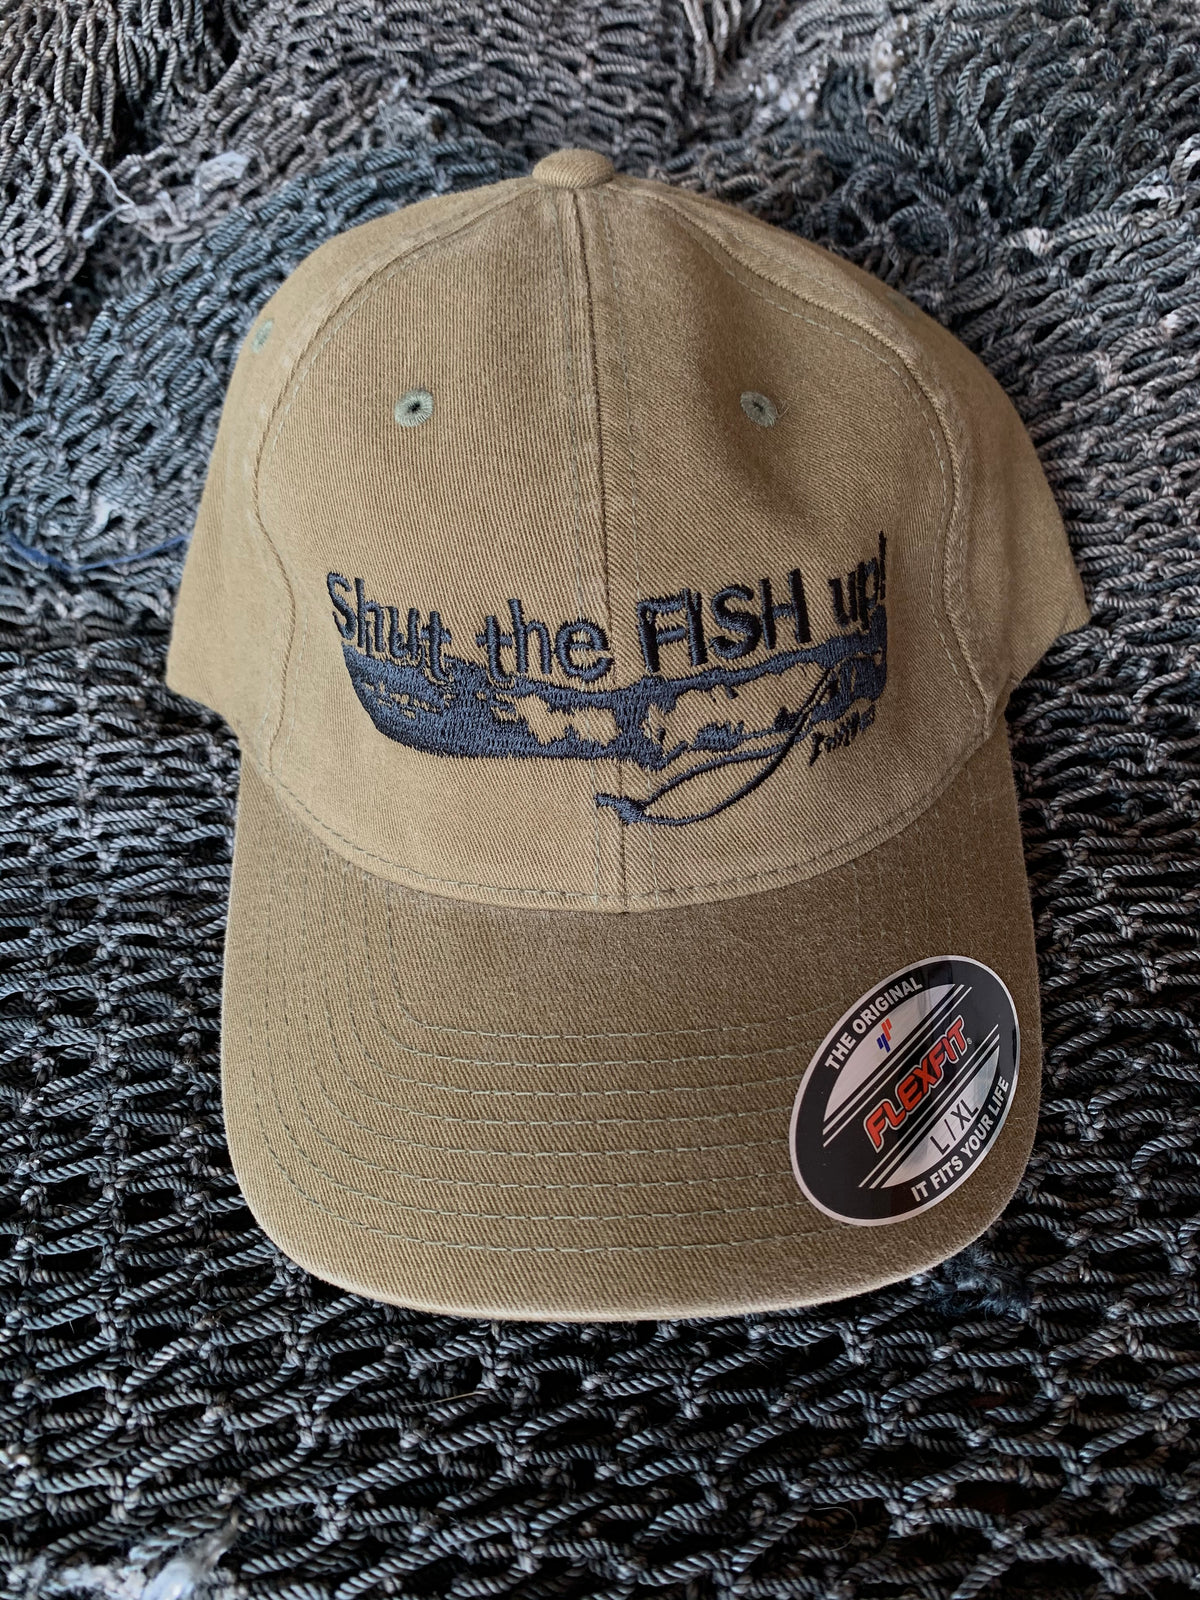 Shut The Fish Up Flexfit Hat